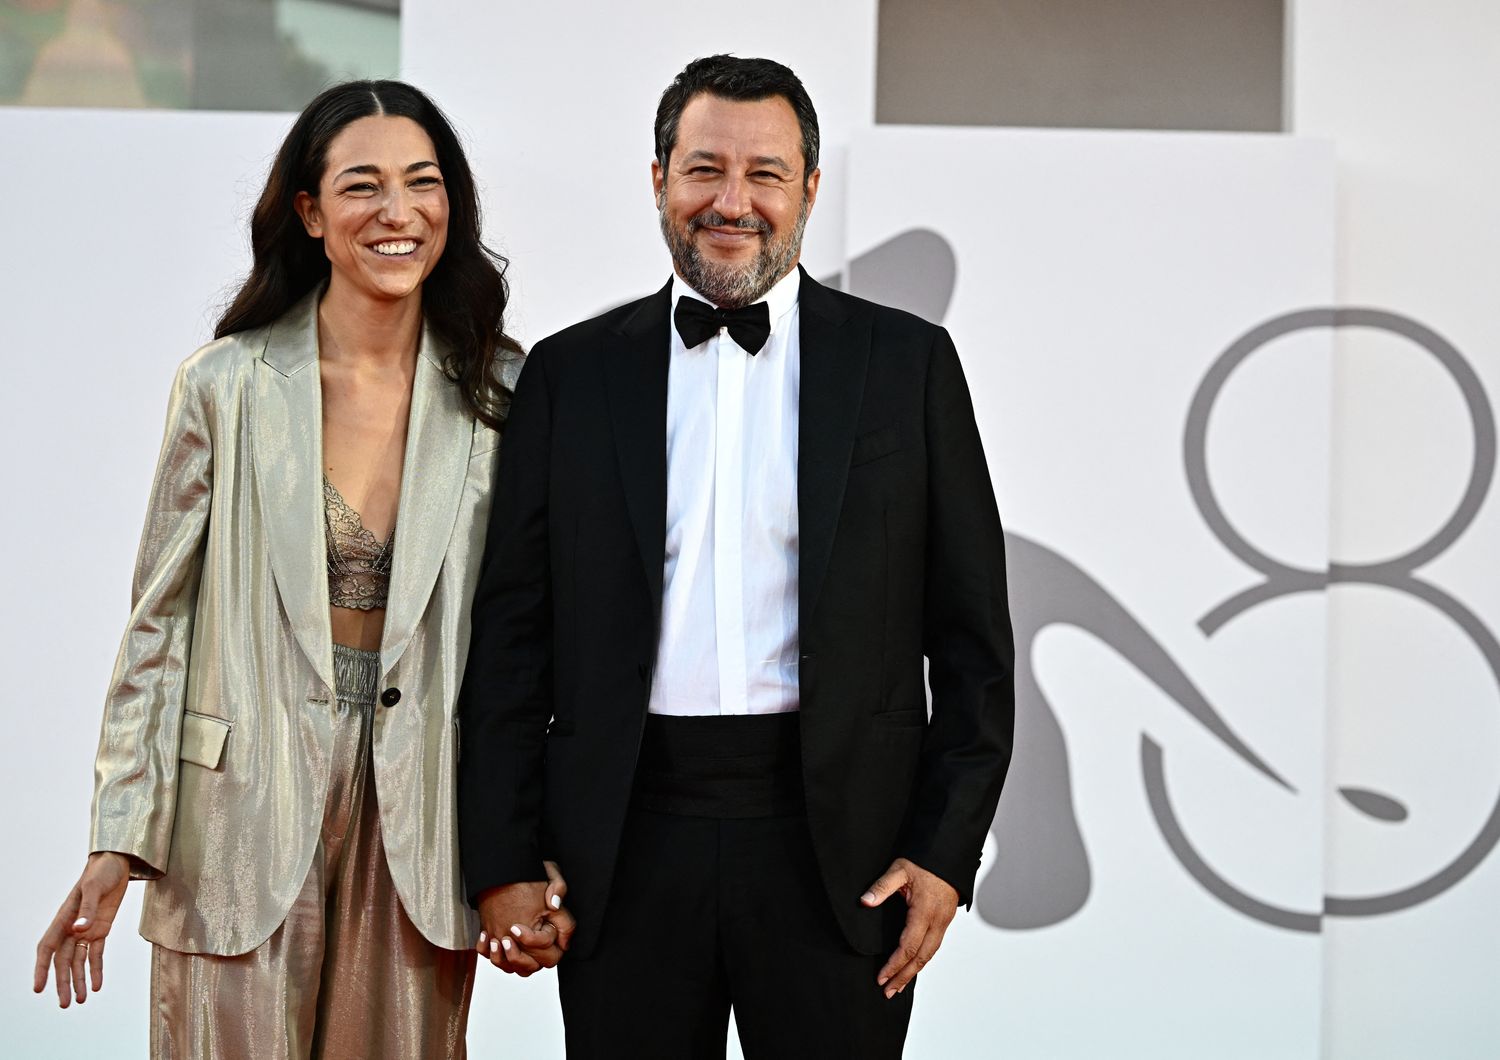 Francesca Verdini e Matteo Renzi&nbsp;